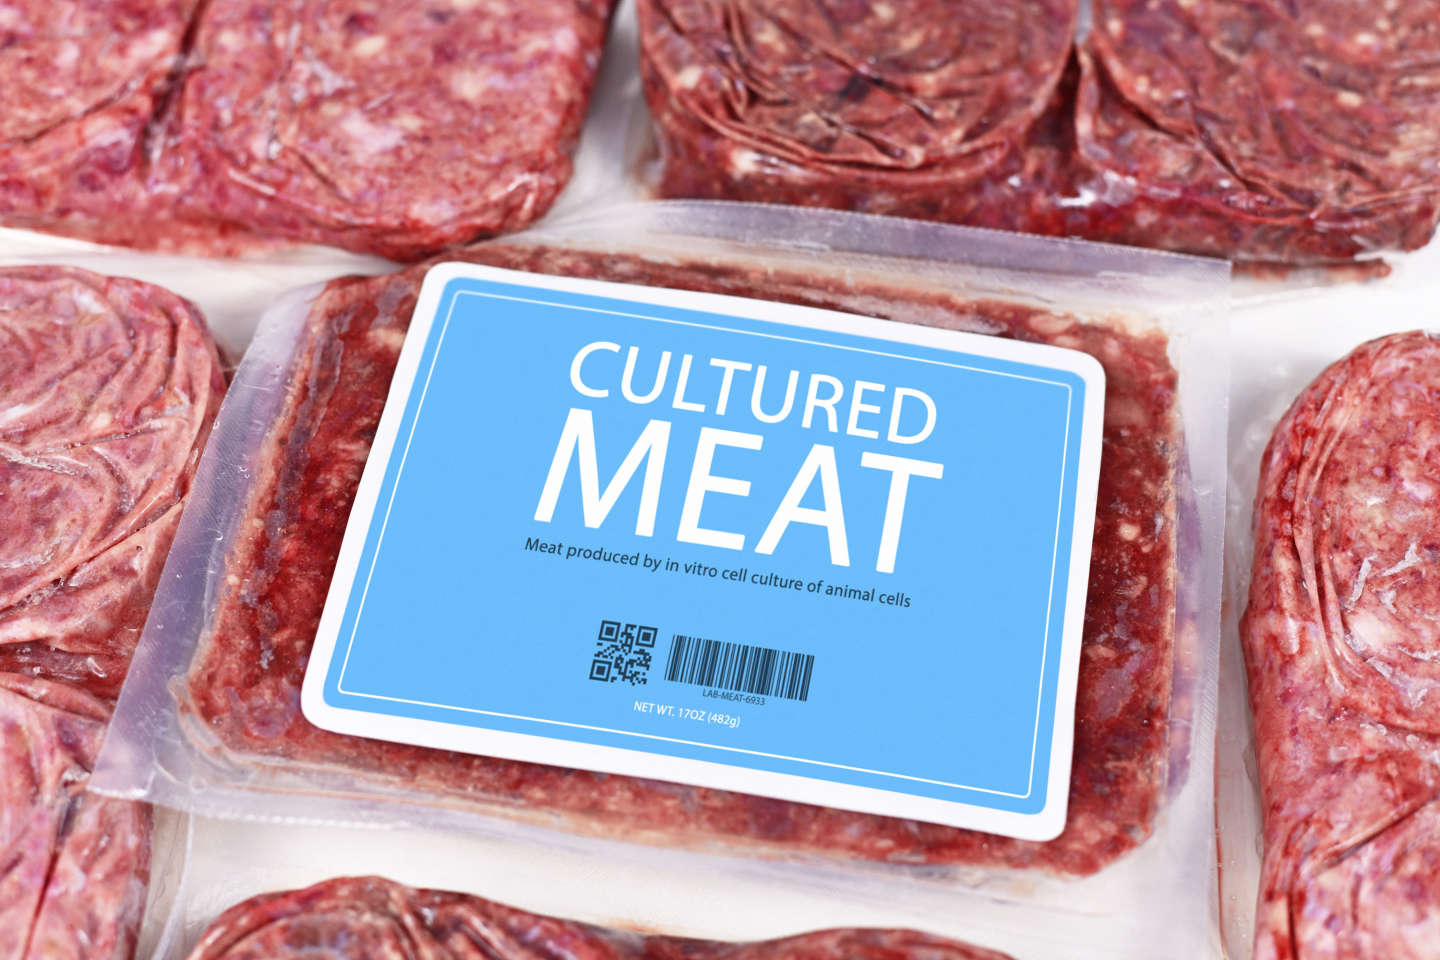 « La viande cultivée peut représenter un atout pour répondre aux défis environnementaux »